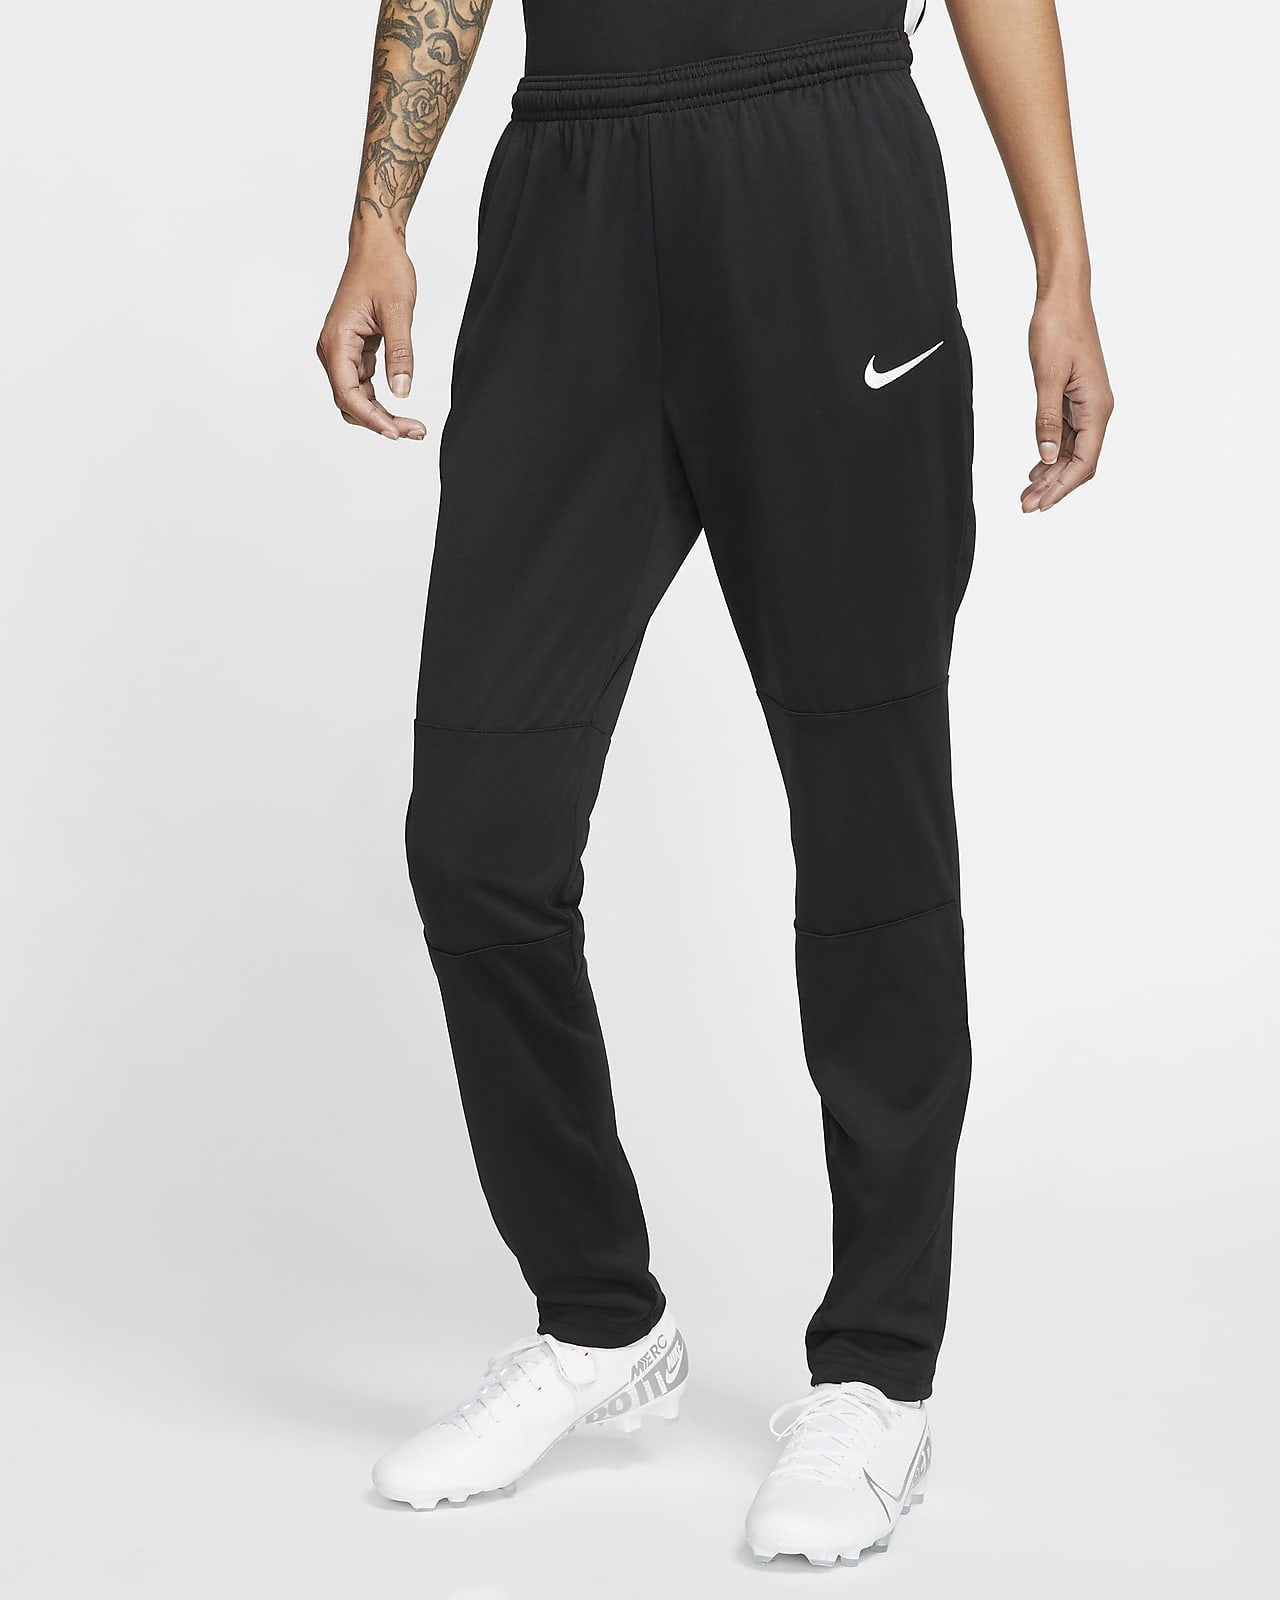 Pantalones de fútbol para Nike Dri-FIT. Nike.com